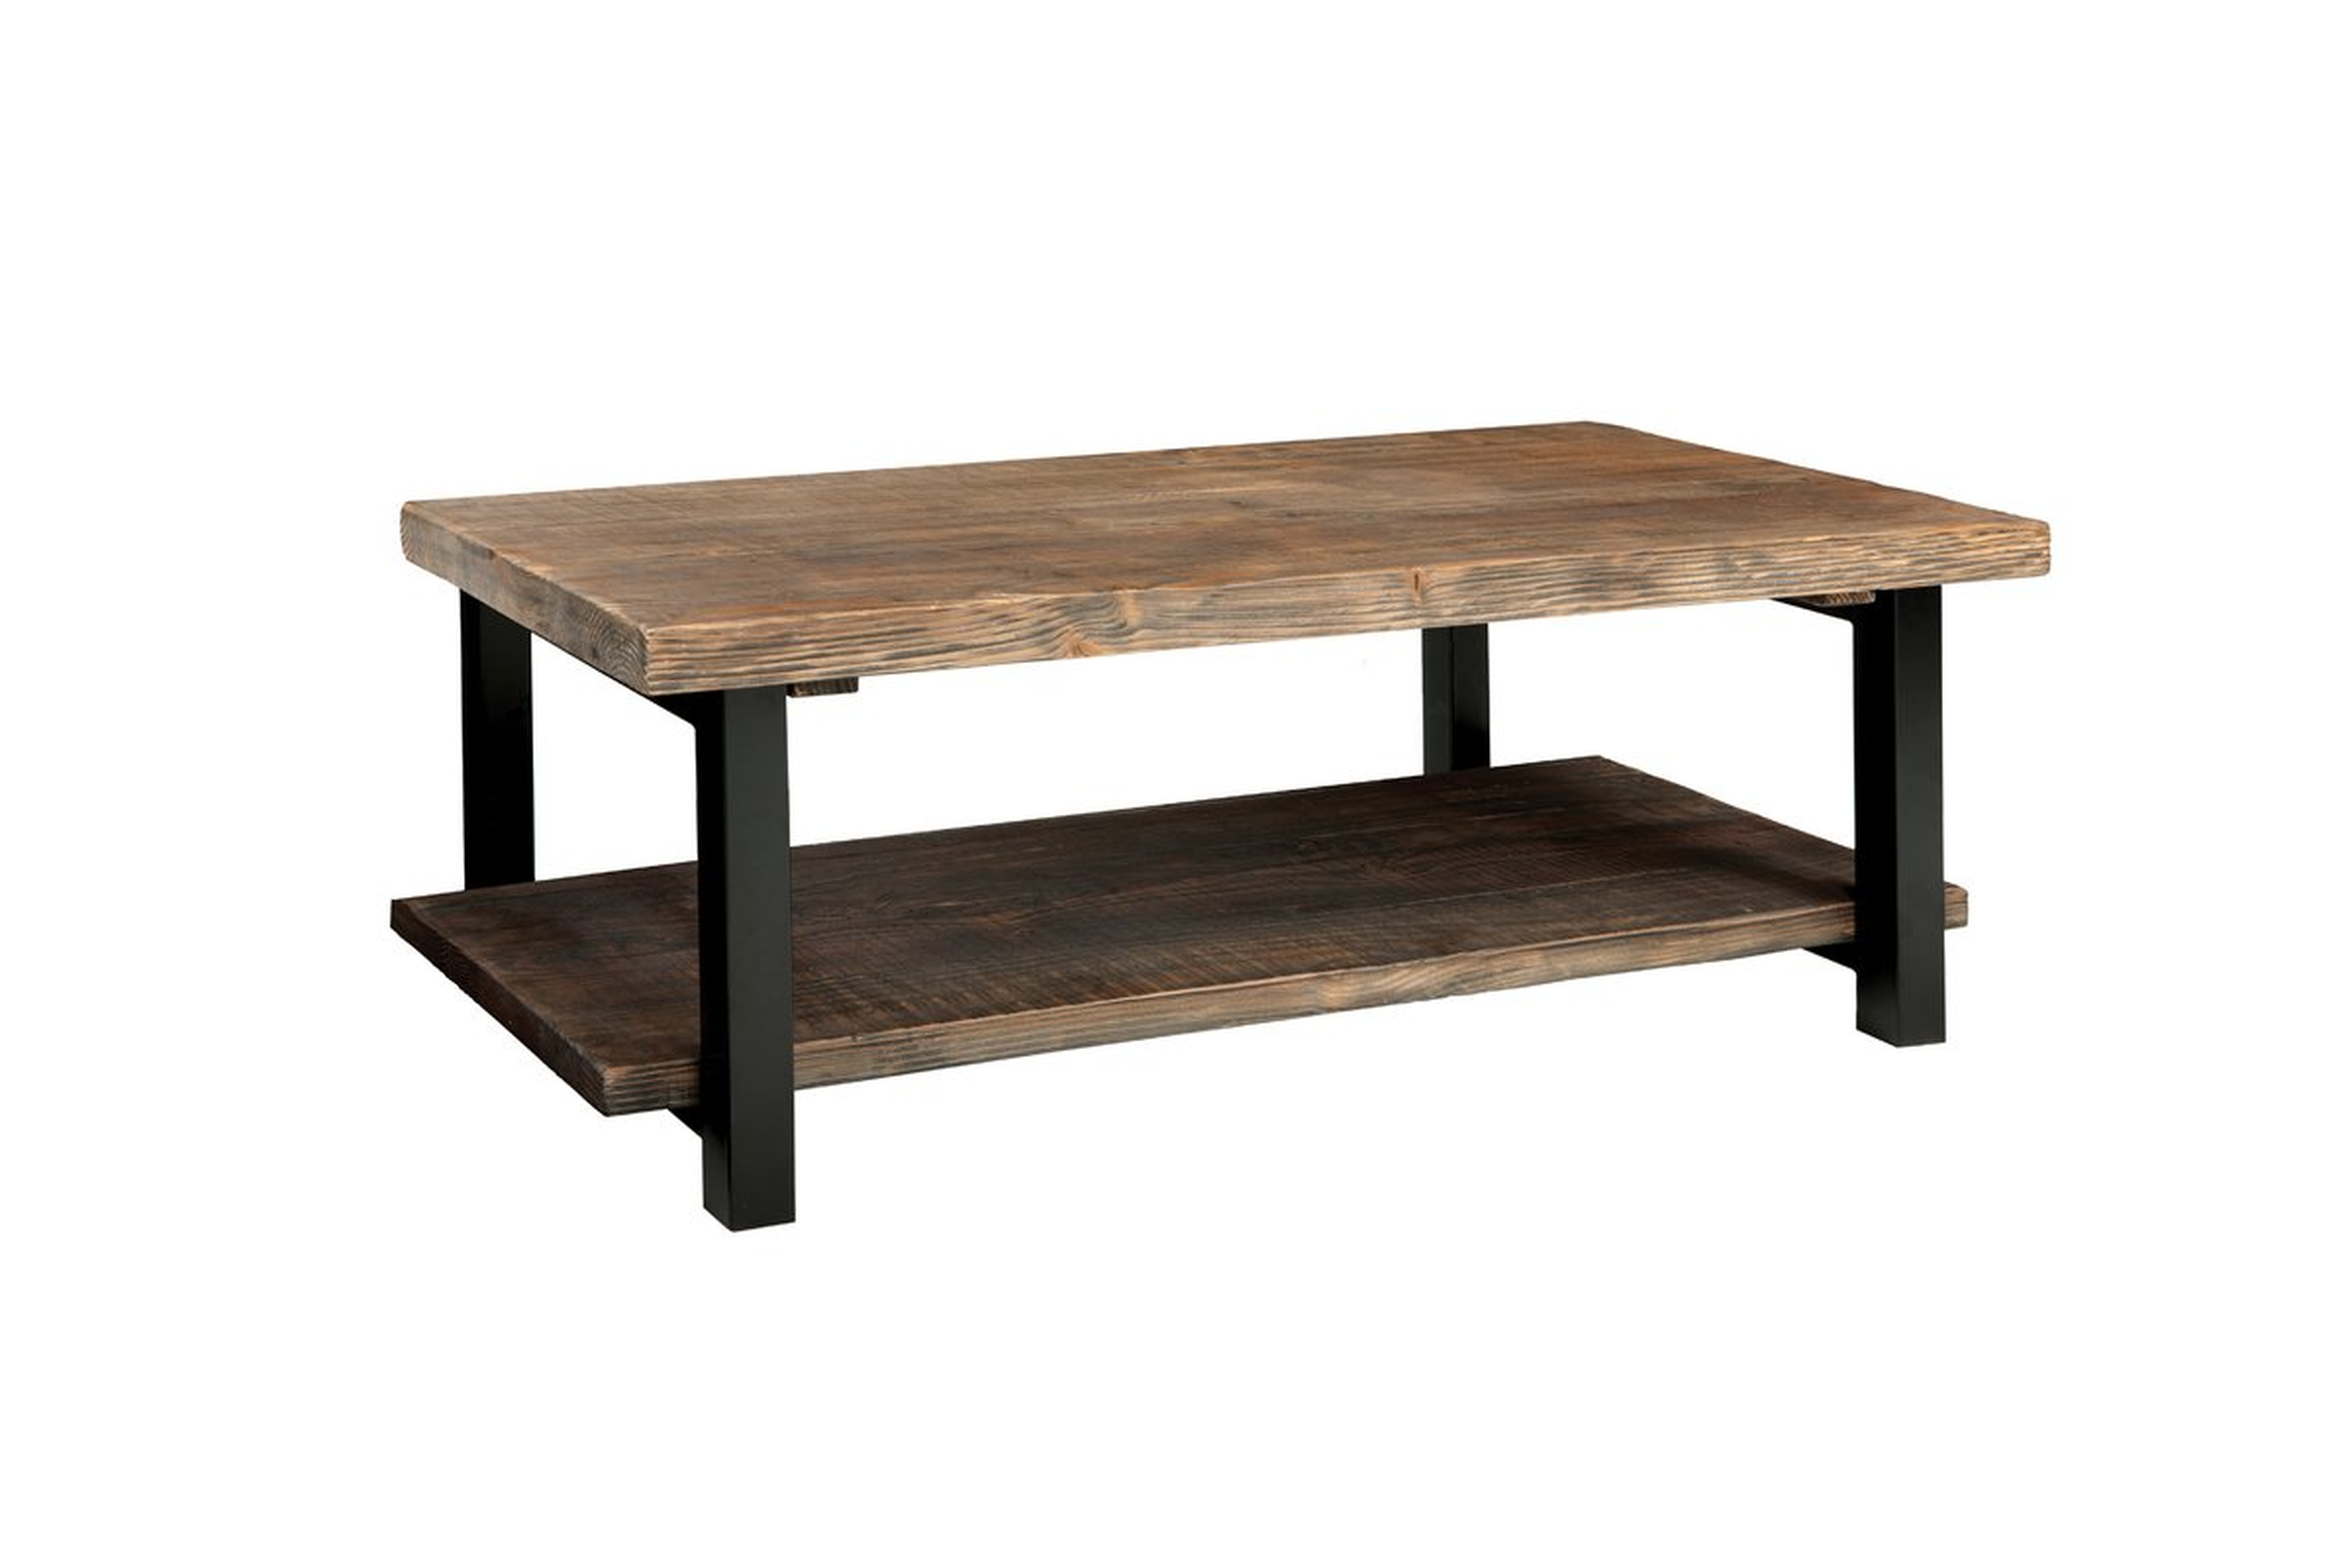 Veropeso 42" Wood/Metal Coffee Table - Wayfair